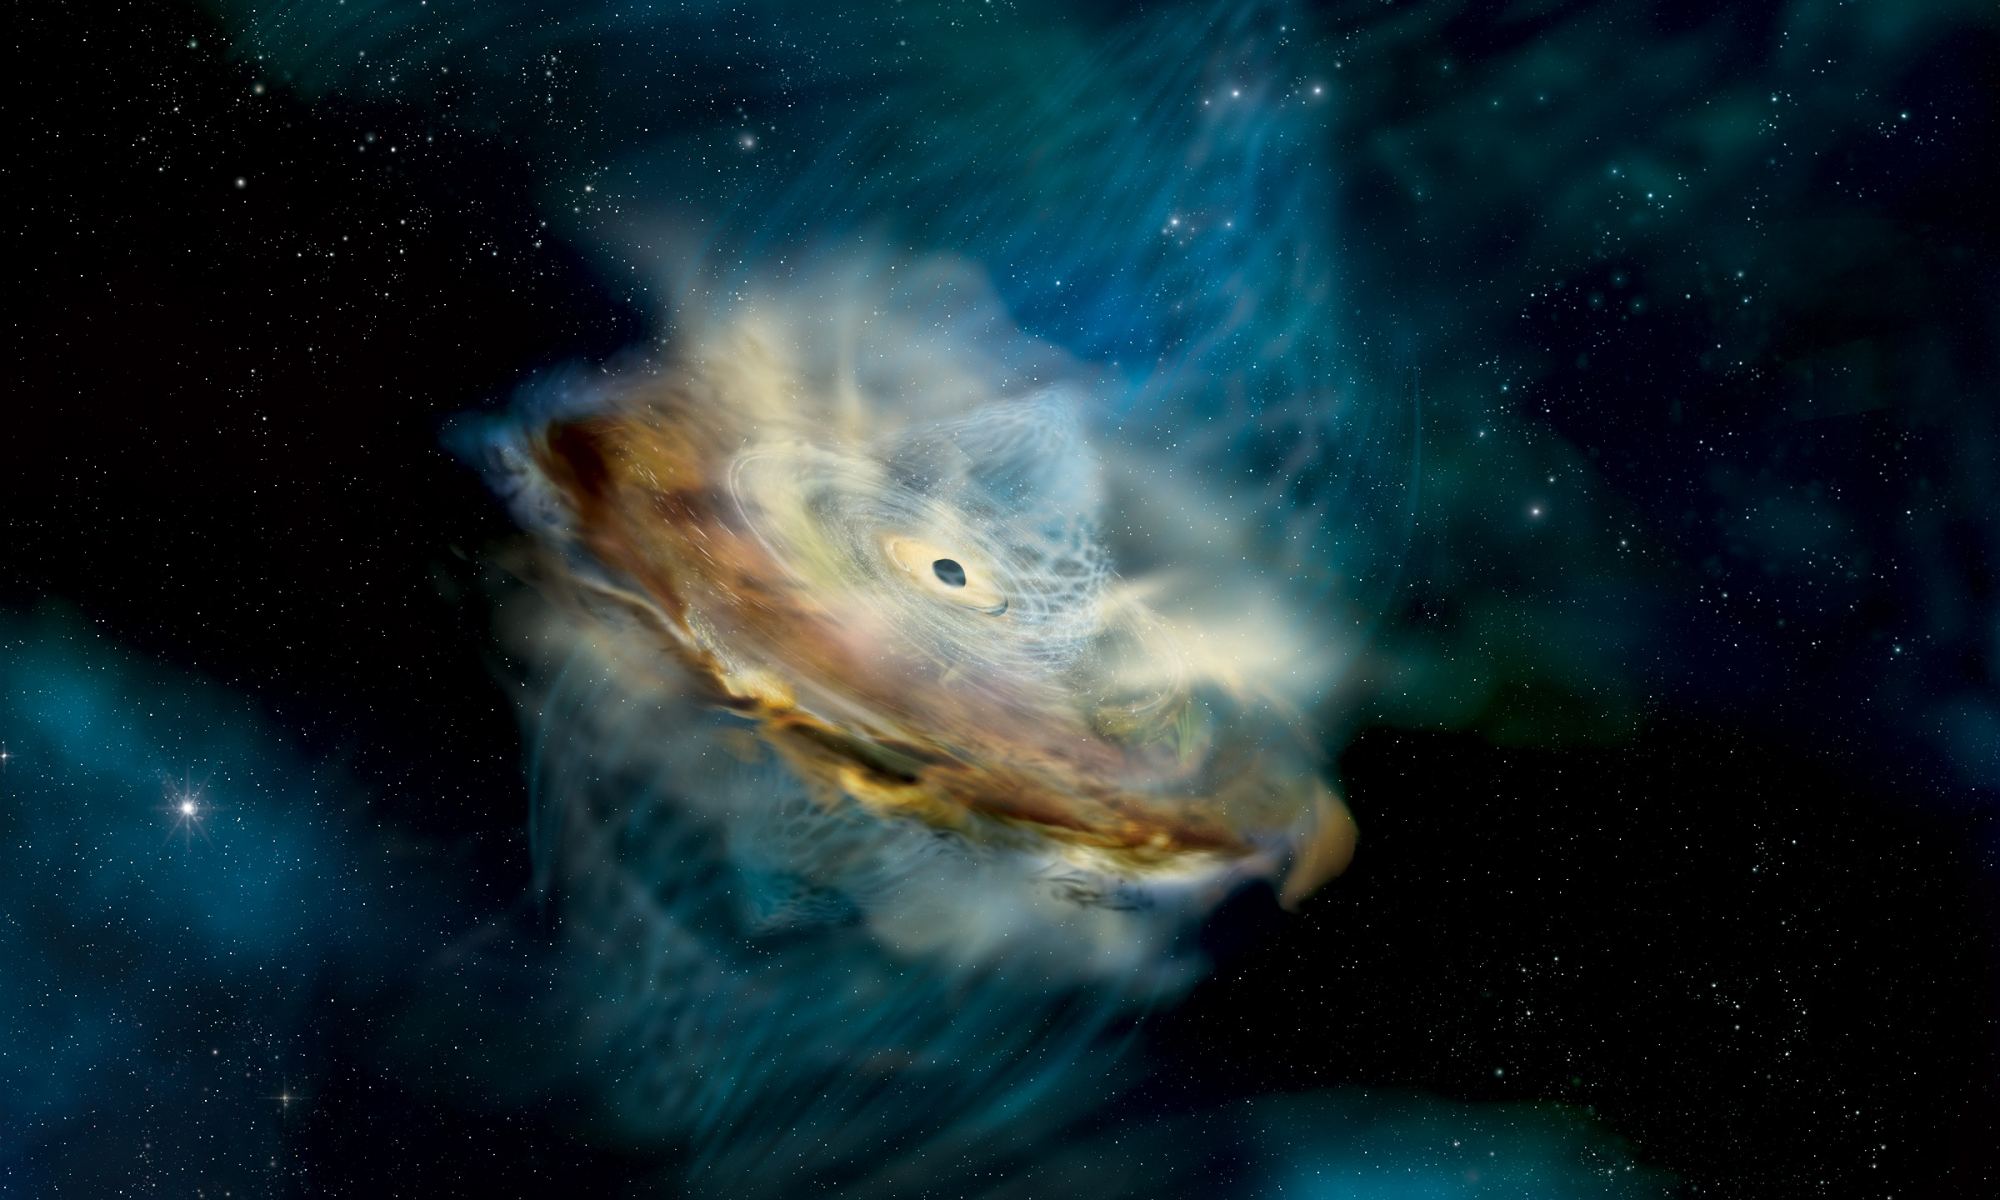 Bạn có bao giờ tò mò về những bí mật đằng sau lỗ đen trên không gian vũ trụ chưa? Hãy cùng đến với hình ảnh liên quan để khám phá và hiểu thêm về kiến thức khoa học thú vị về vũ trụ này.